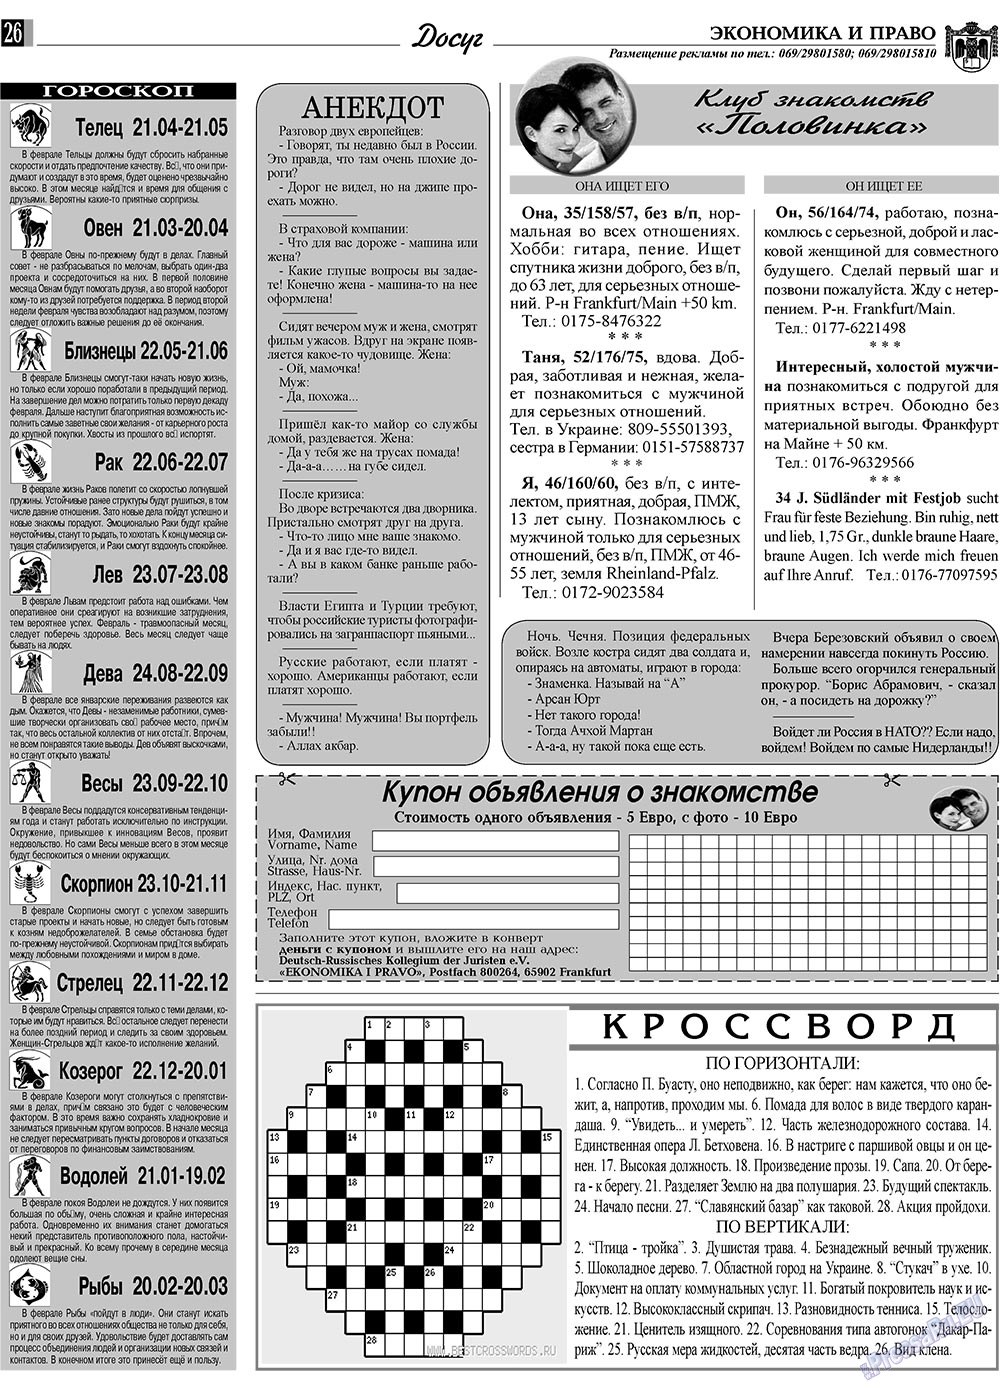 Экономика и право, газета. 2009 №2 стр.26